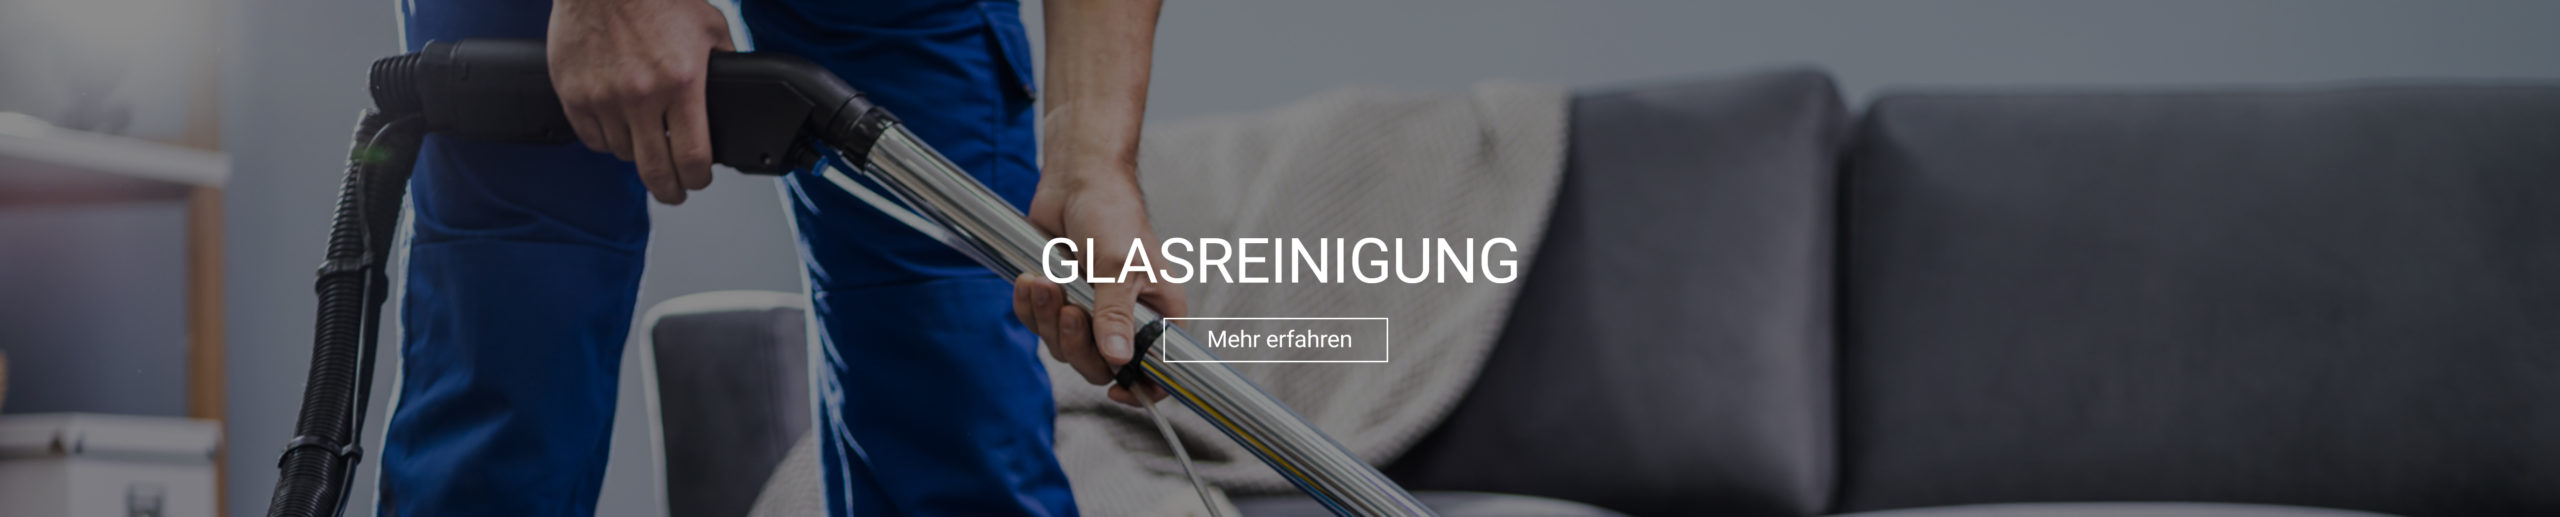 banner_glasreinigung